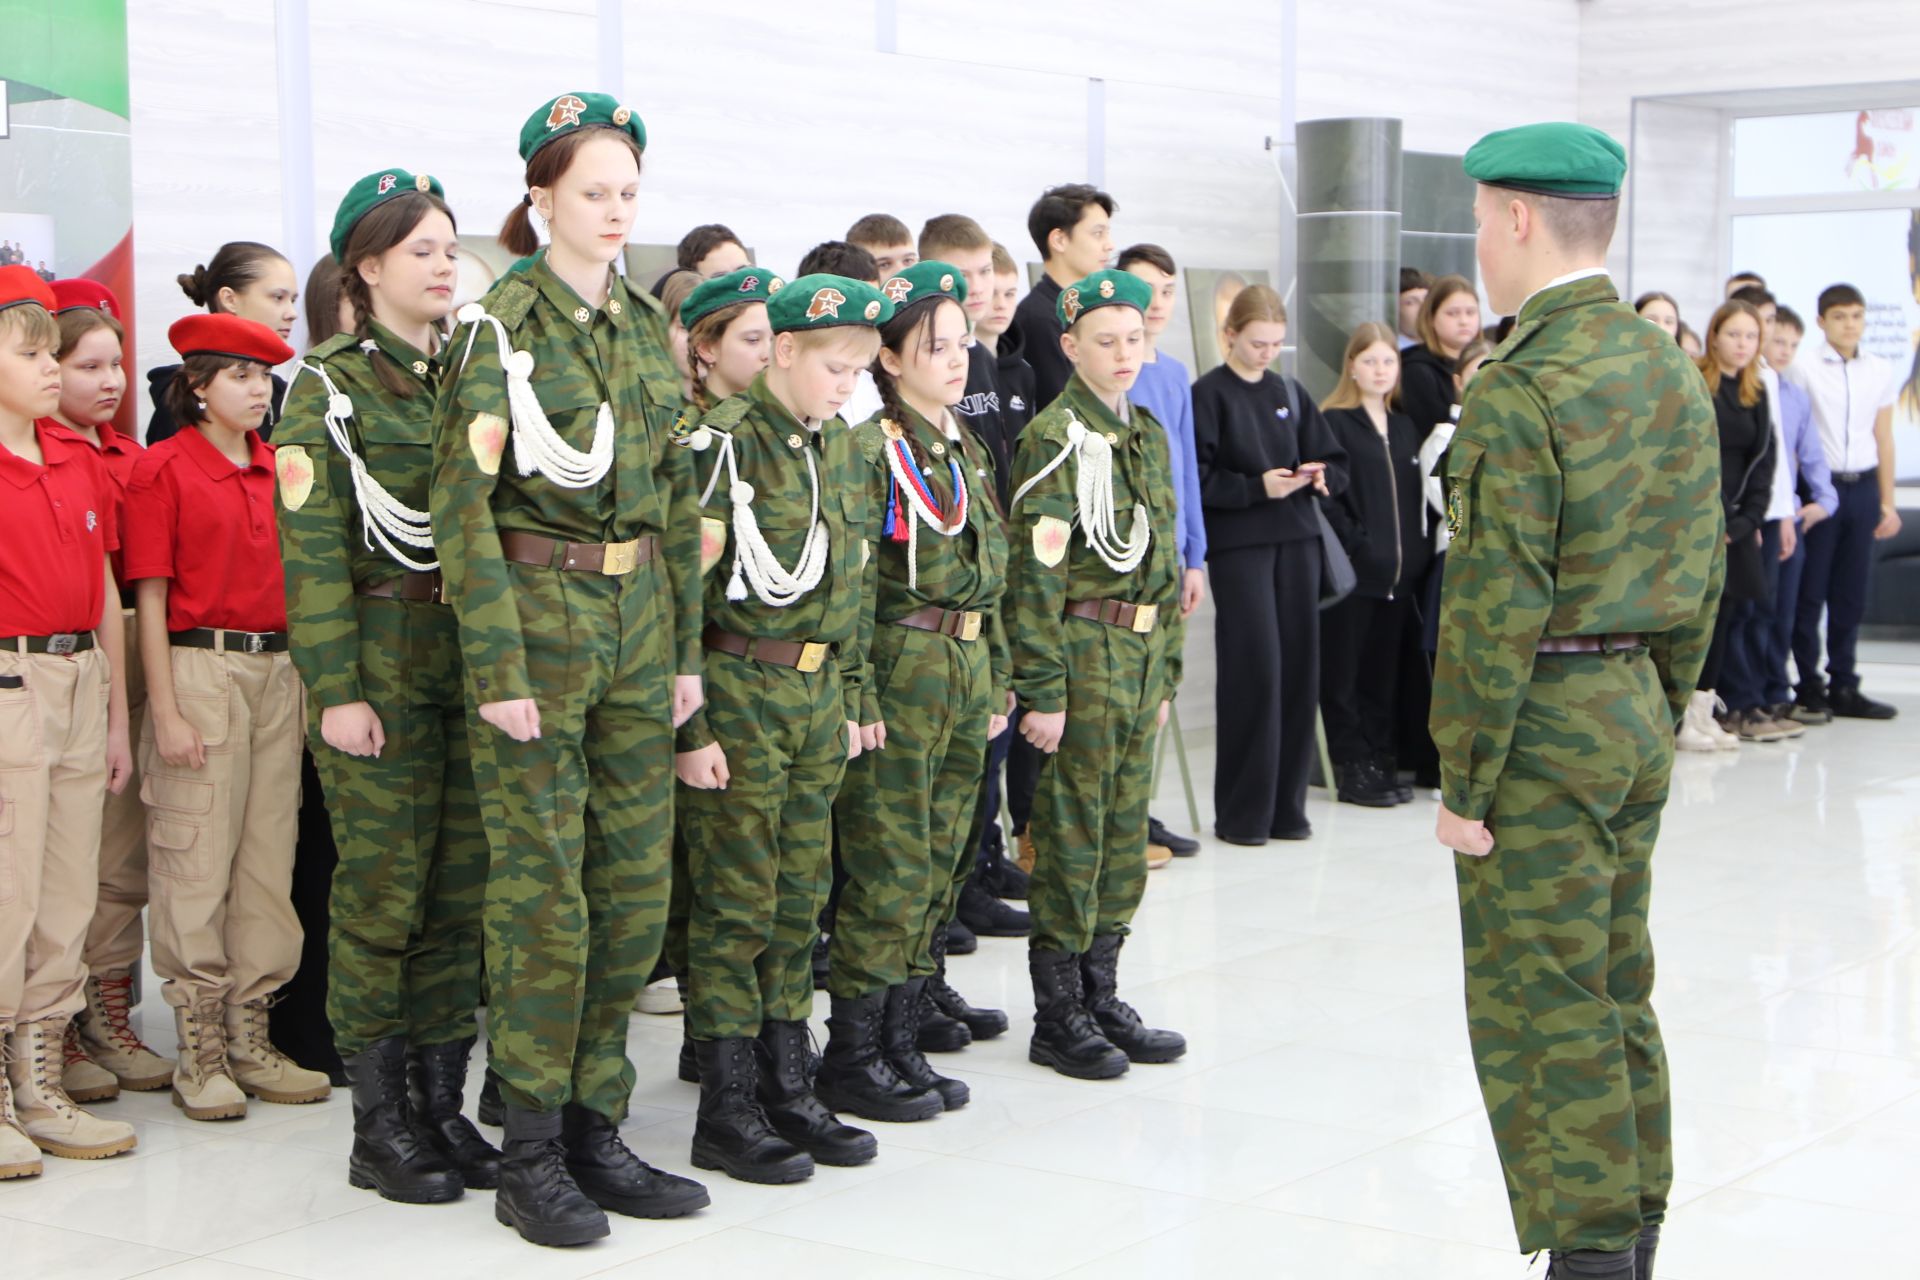 В Алексеевском районе открылась патриотическая выставка «Герои среди нас»